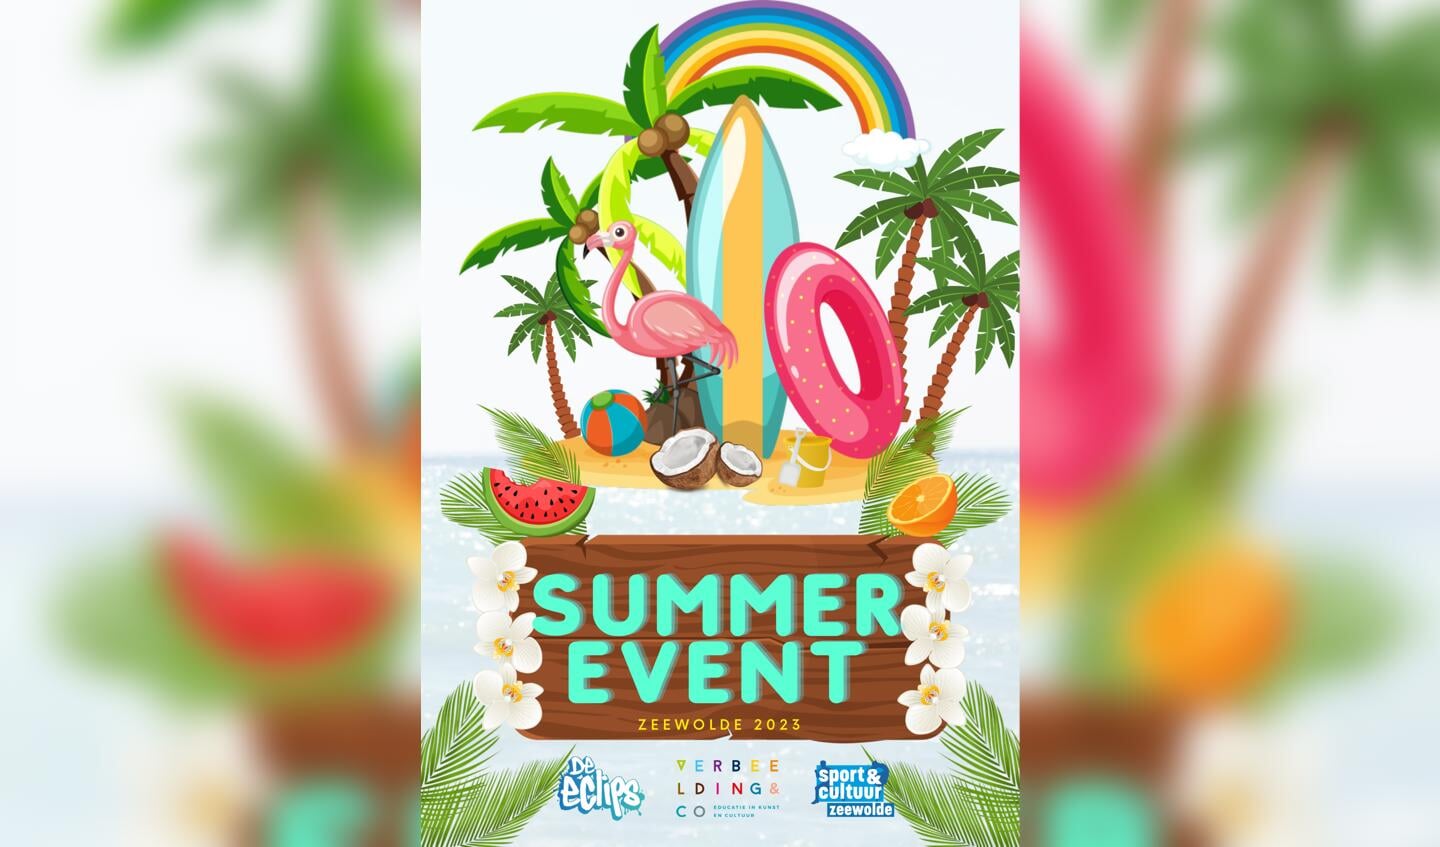 Summer event 